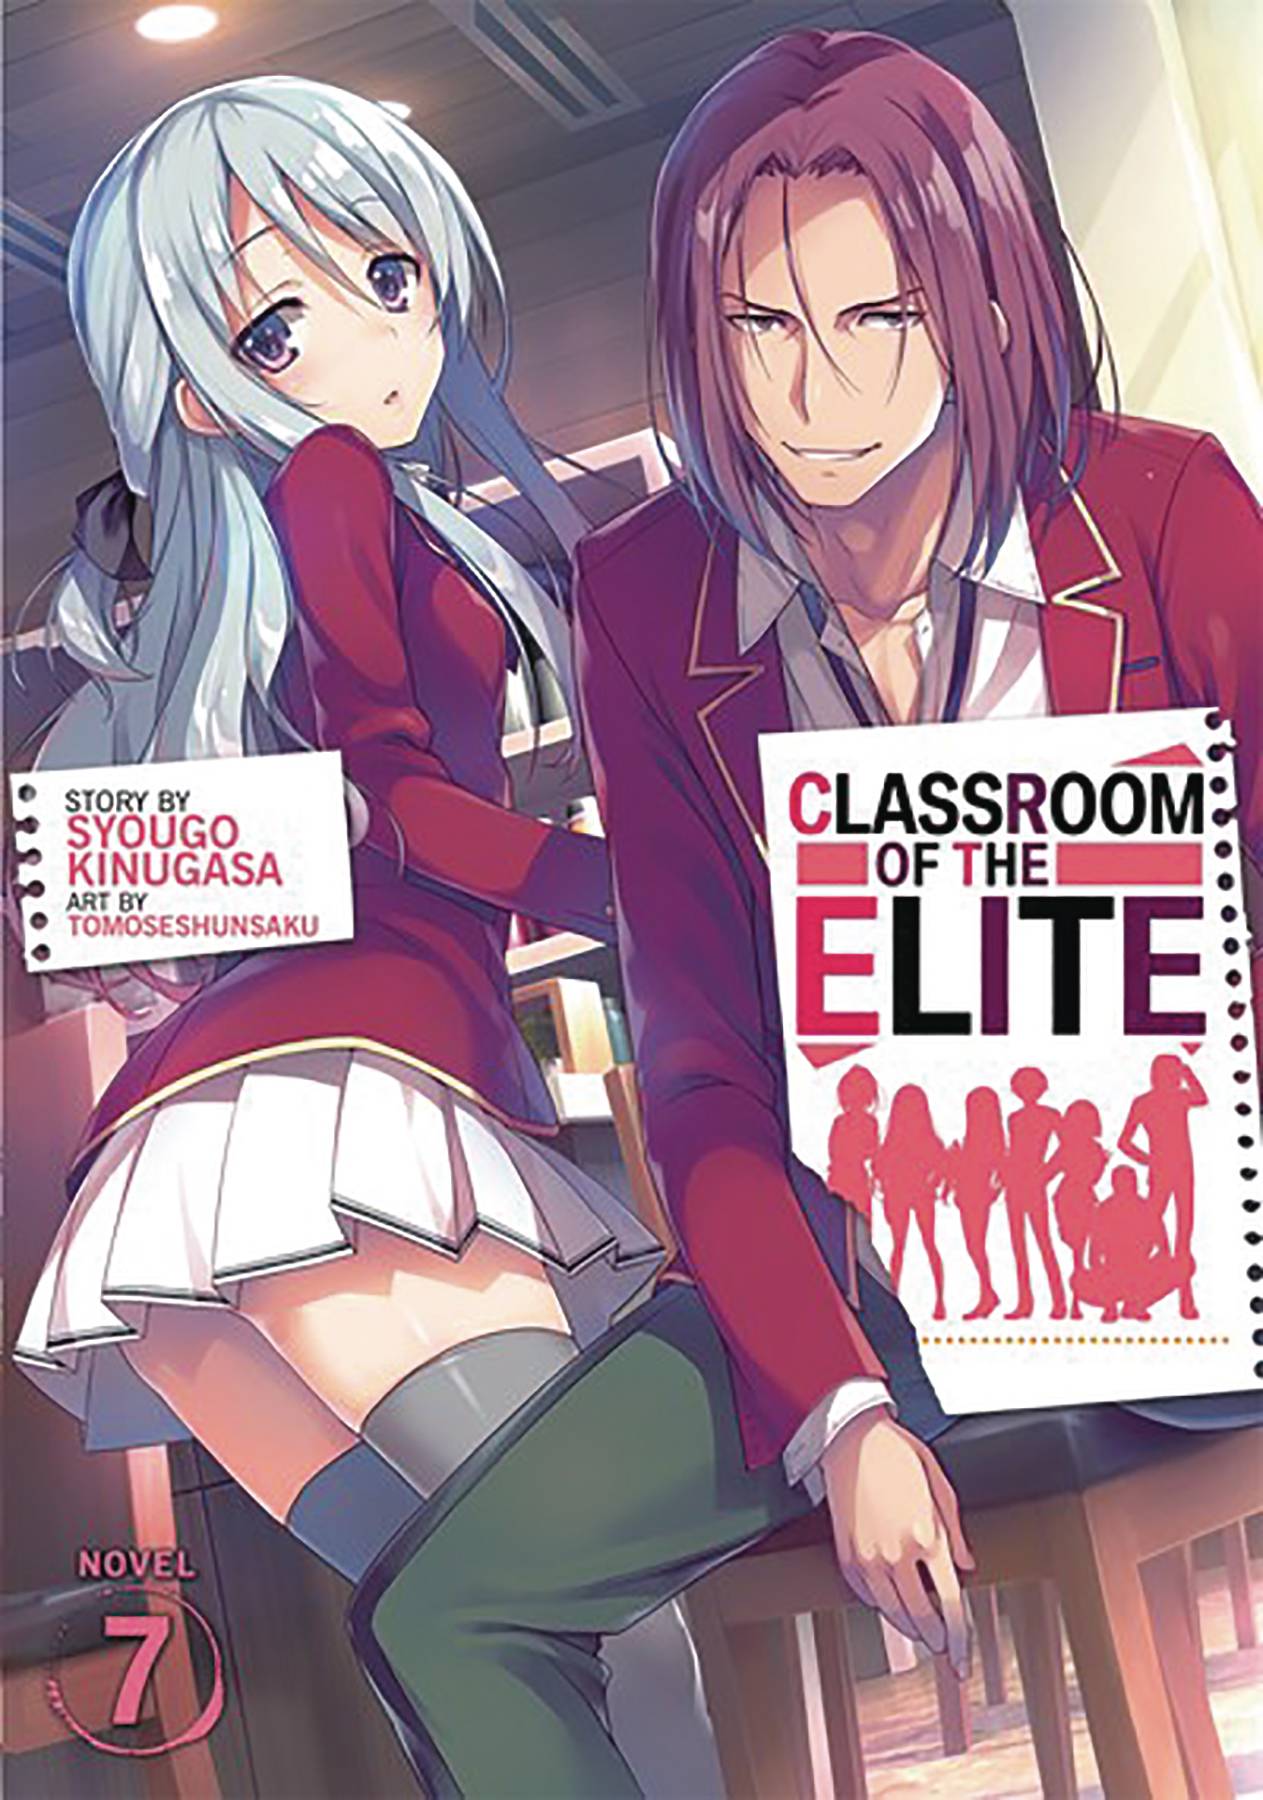 Kiyotaka Ayanokōji (Classroom of the Elite) - CartoonDatabase